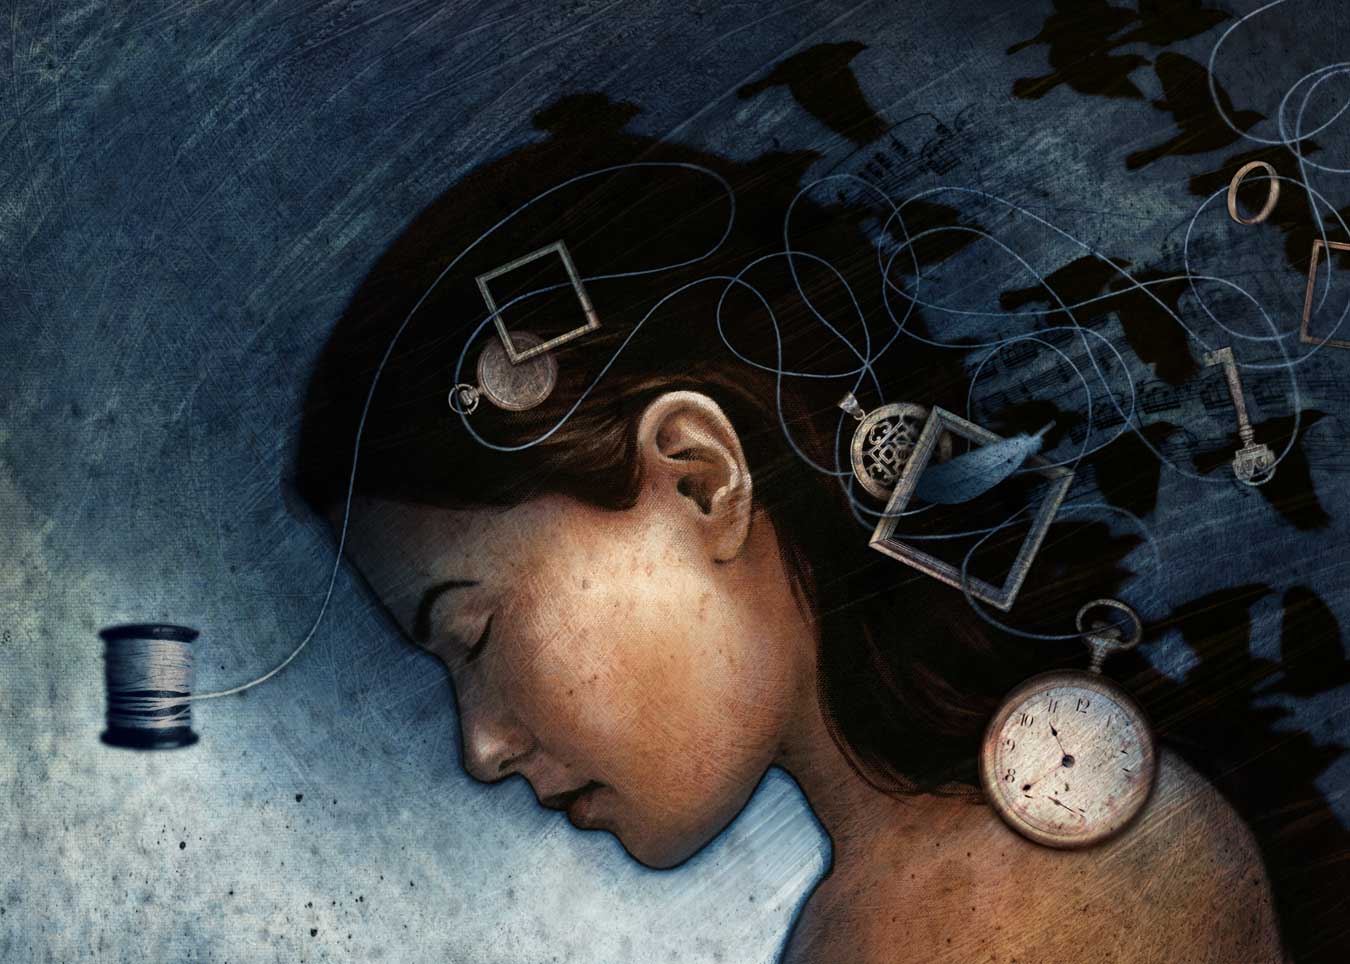 ‘Sleep’ by Matt Manley, 2007. © The artist.